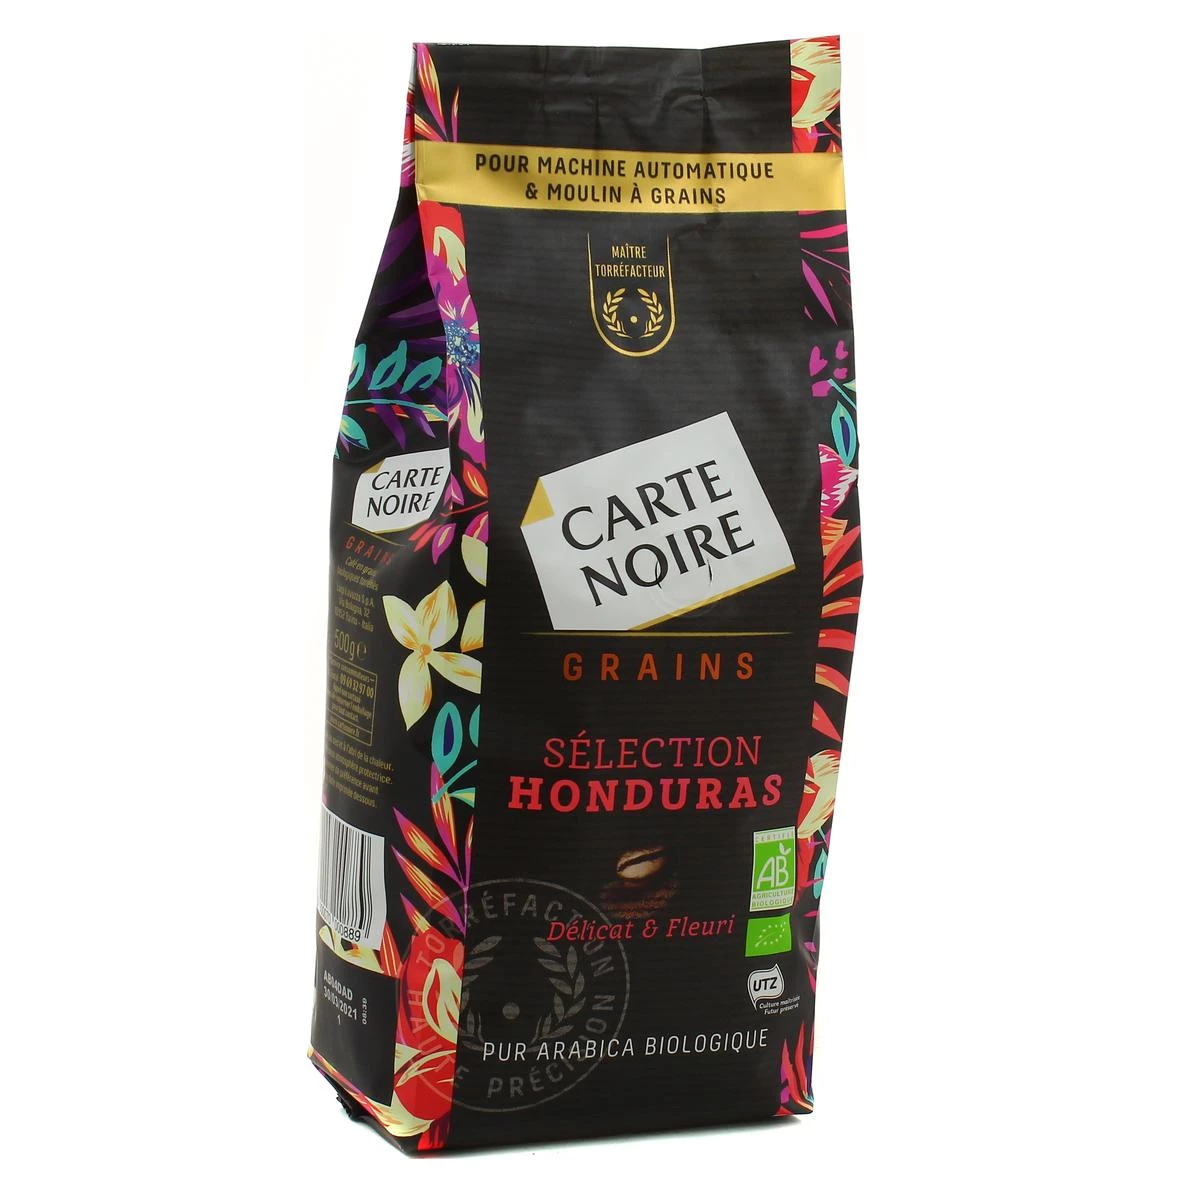 Biologische Honduras Selection koffiebonen 500g - CARTE NOIRE